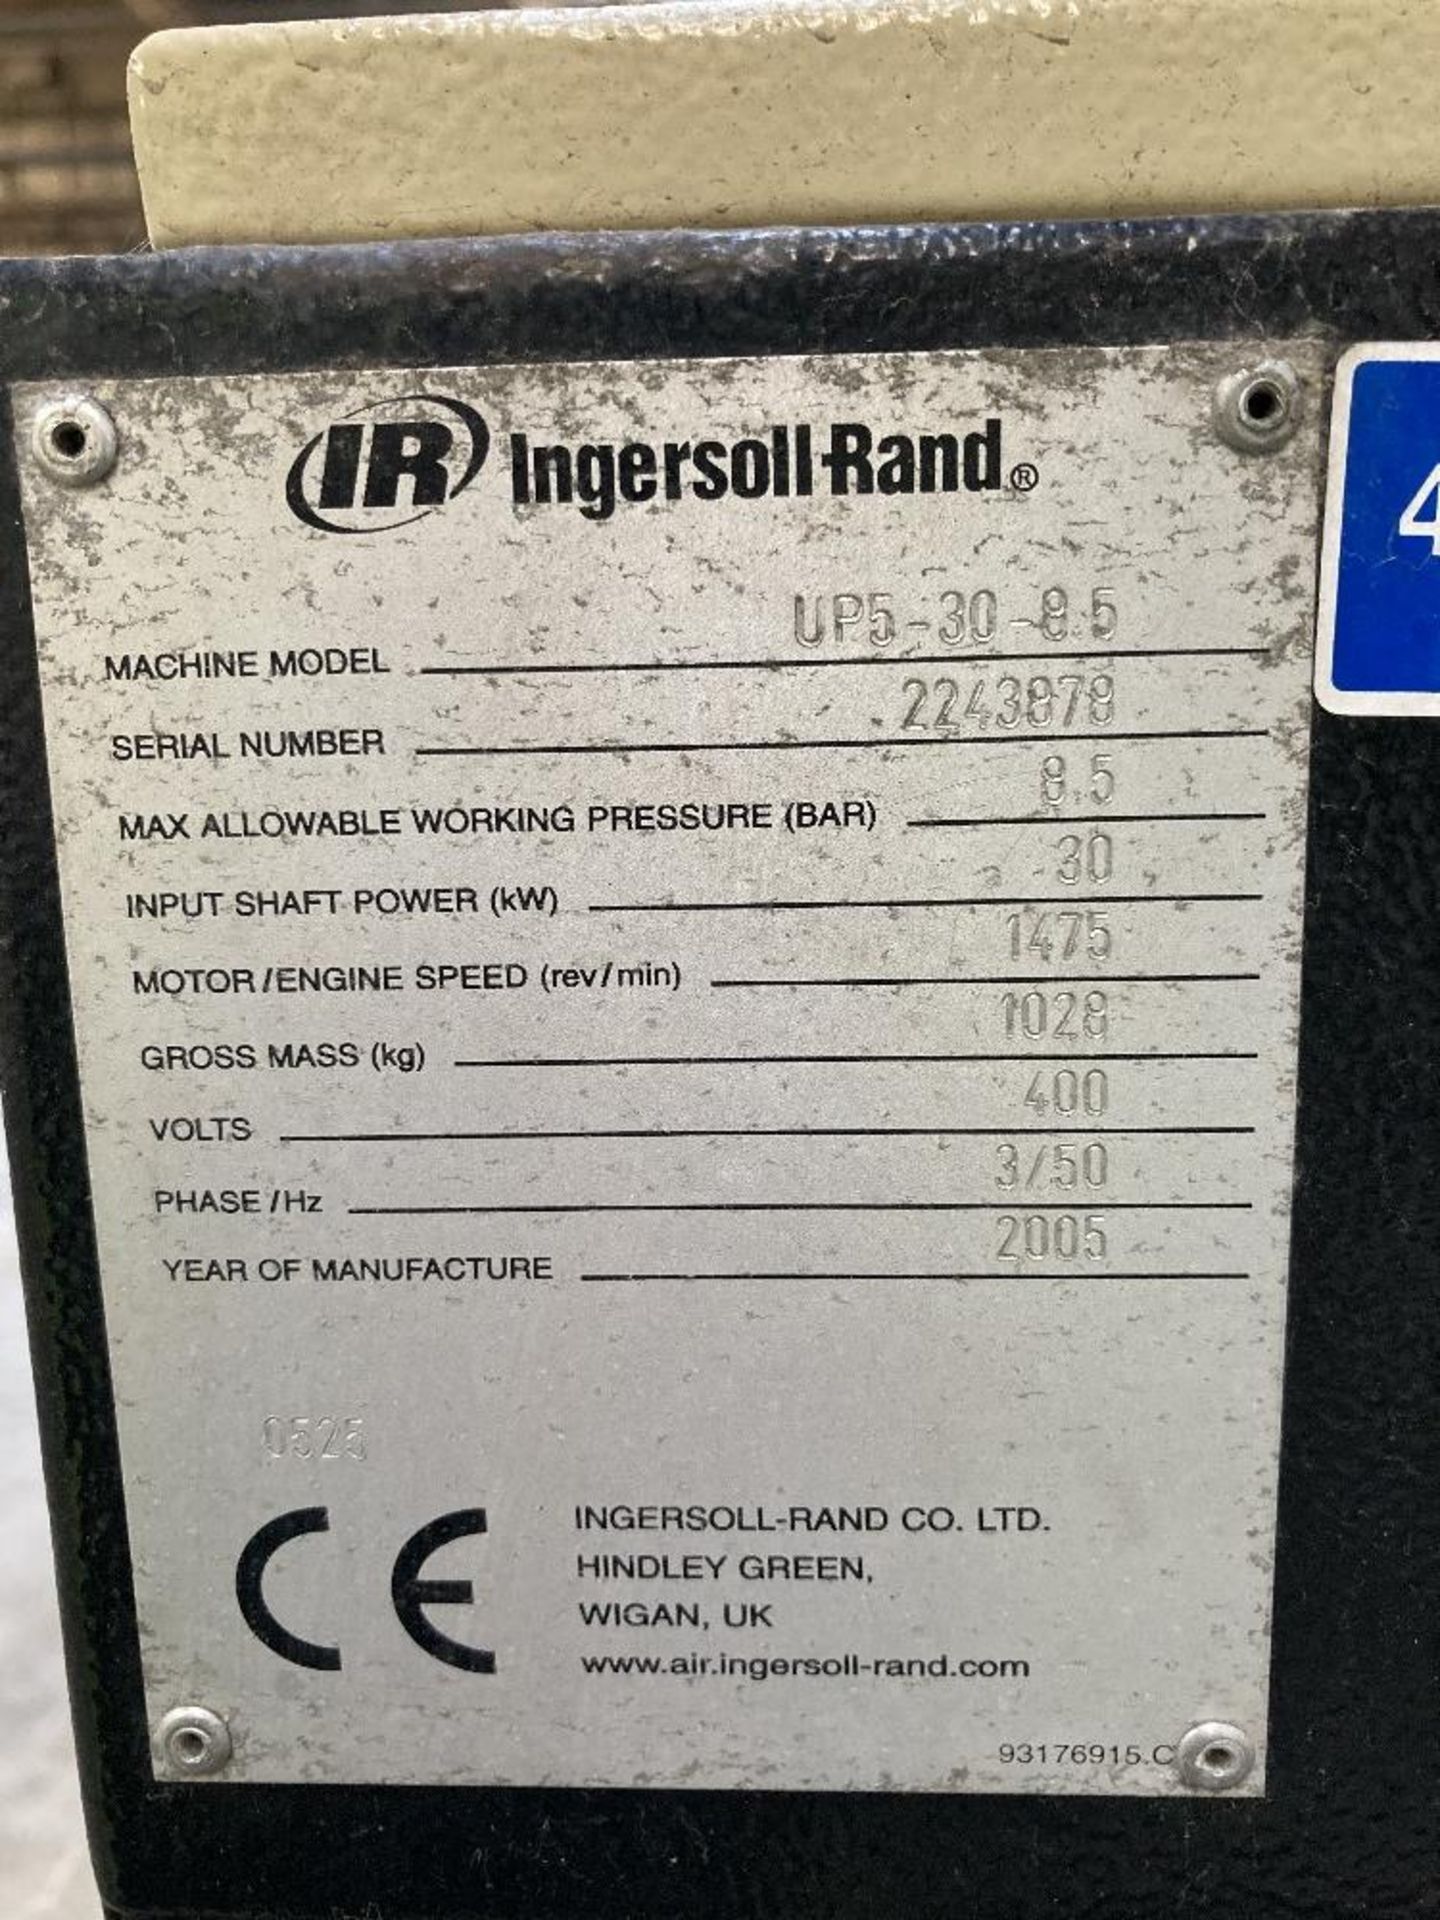 Ingersol Rand UP5-30-9.5 Compressor - Image 5 of 7